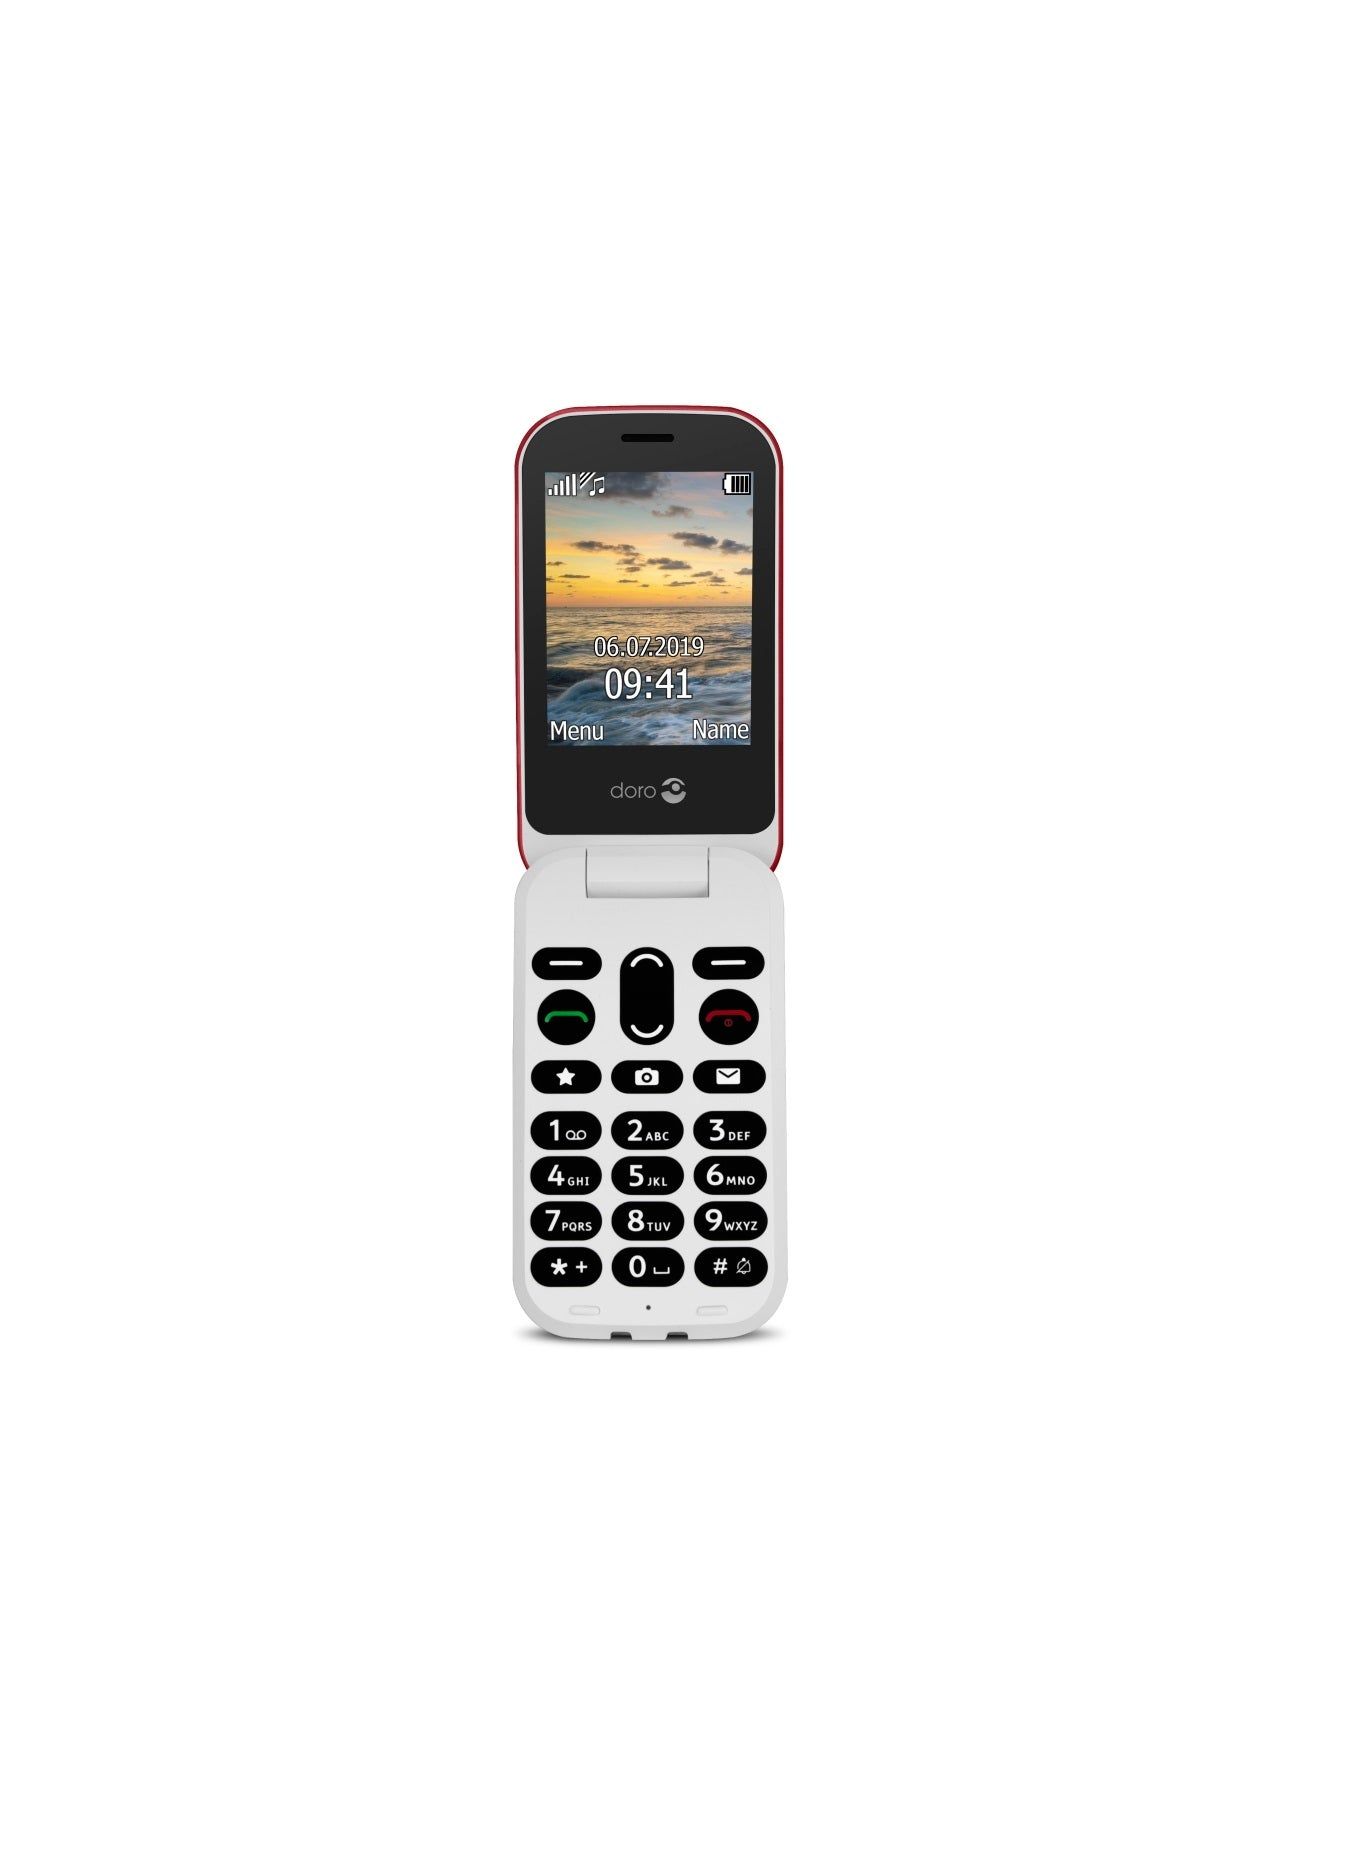 Doro Mobiele Klaptelefoon 6040 2G Senioren GSM Kopen van  Doro?- Vanaf €78.95 bij Pucshop.nl